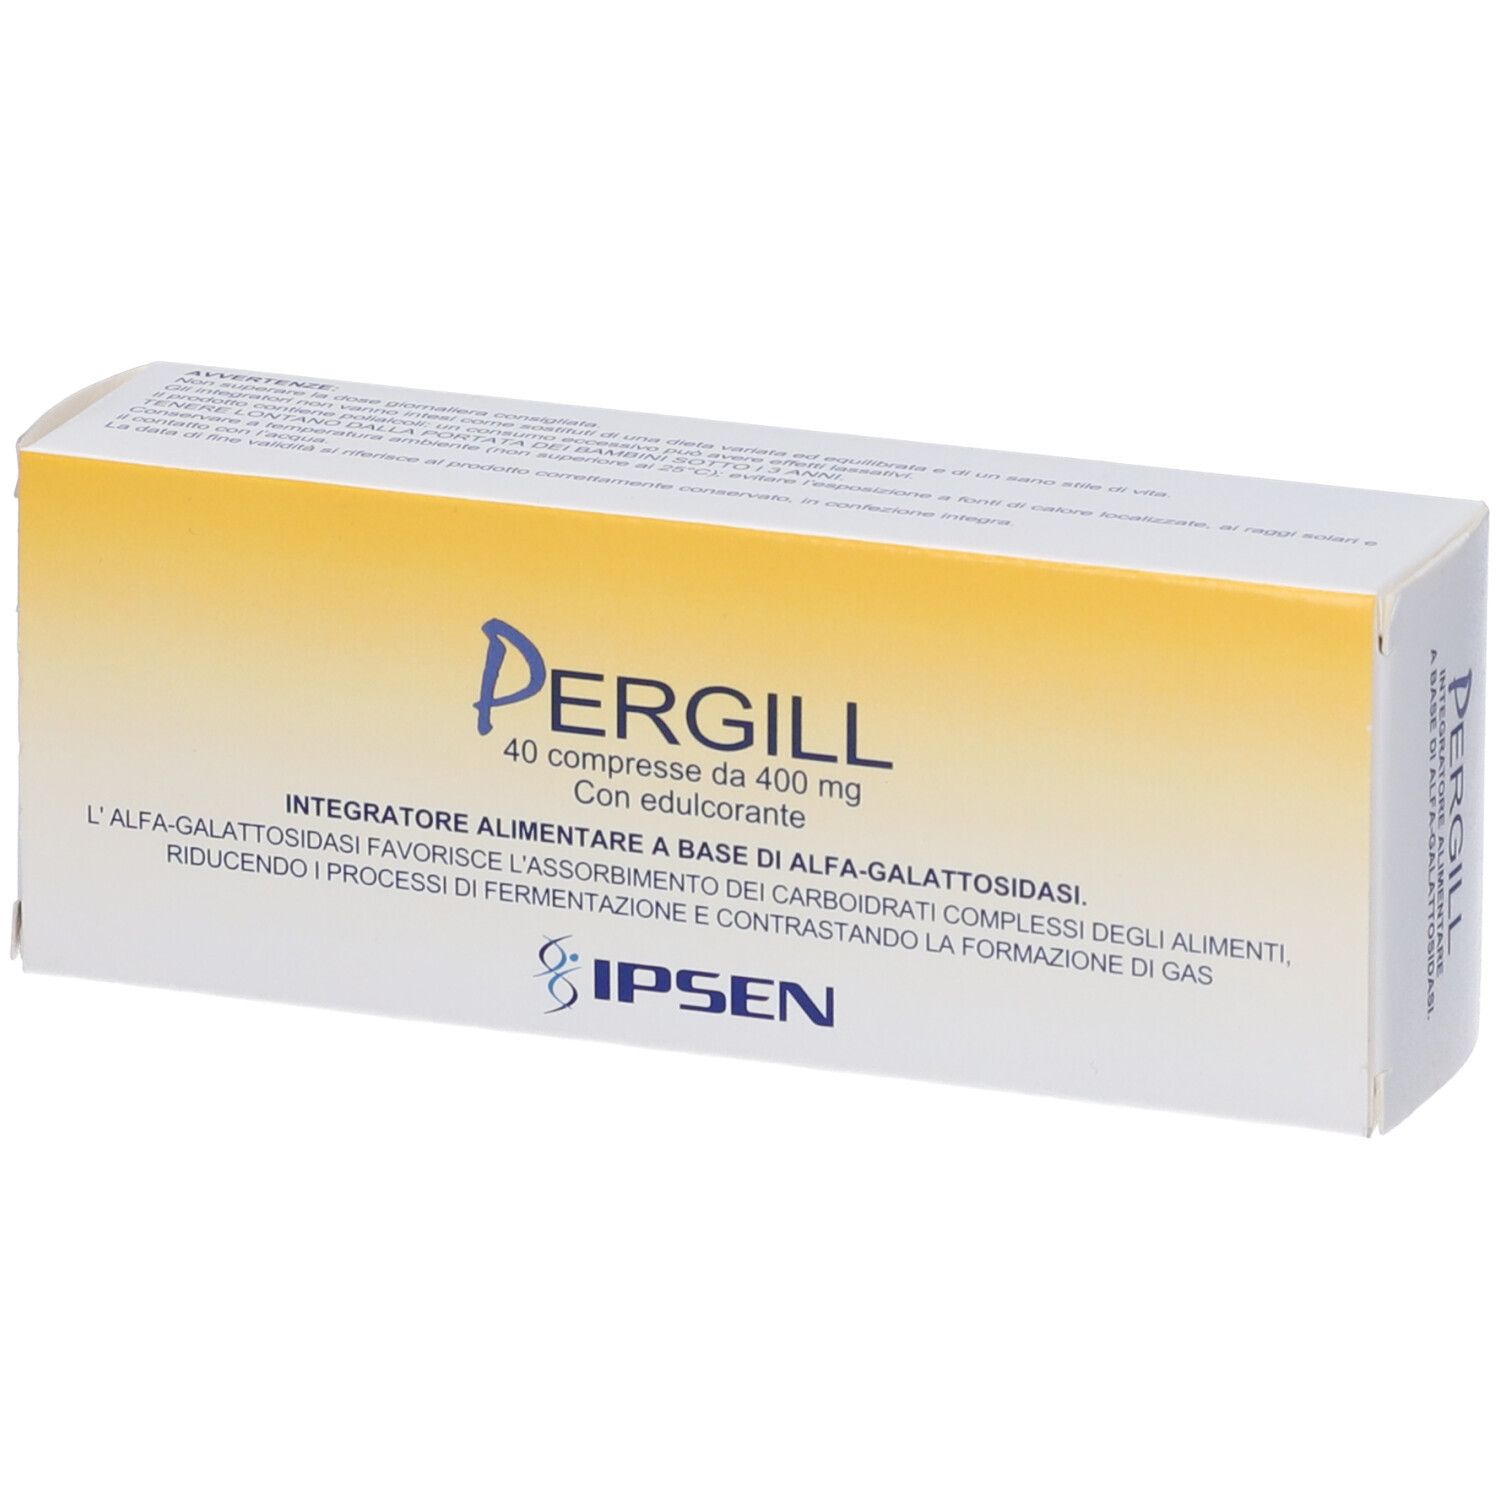 PERGILL®